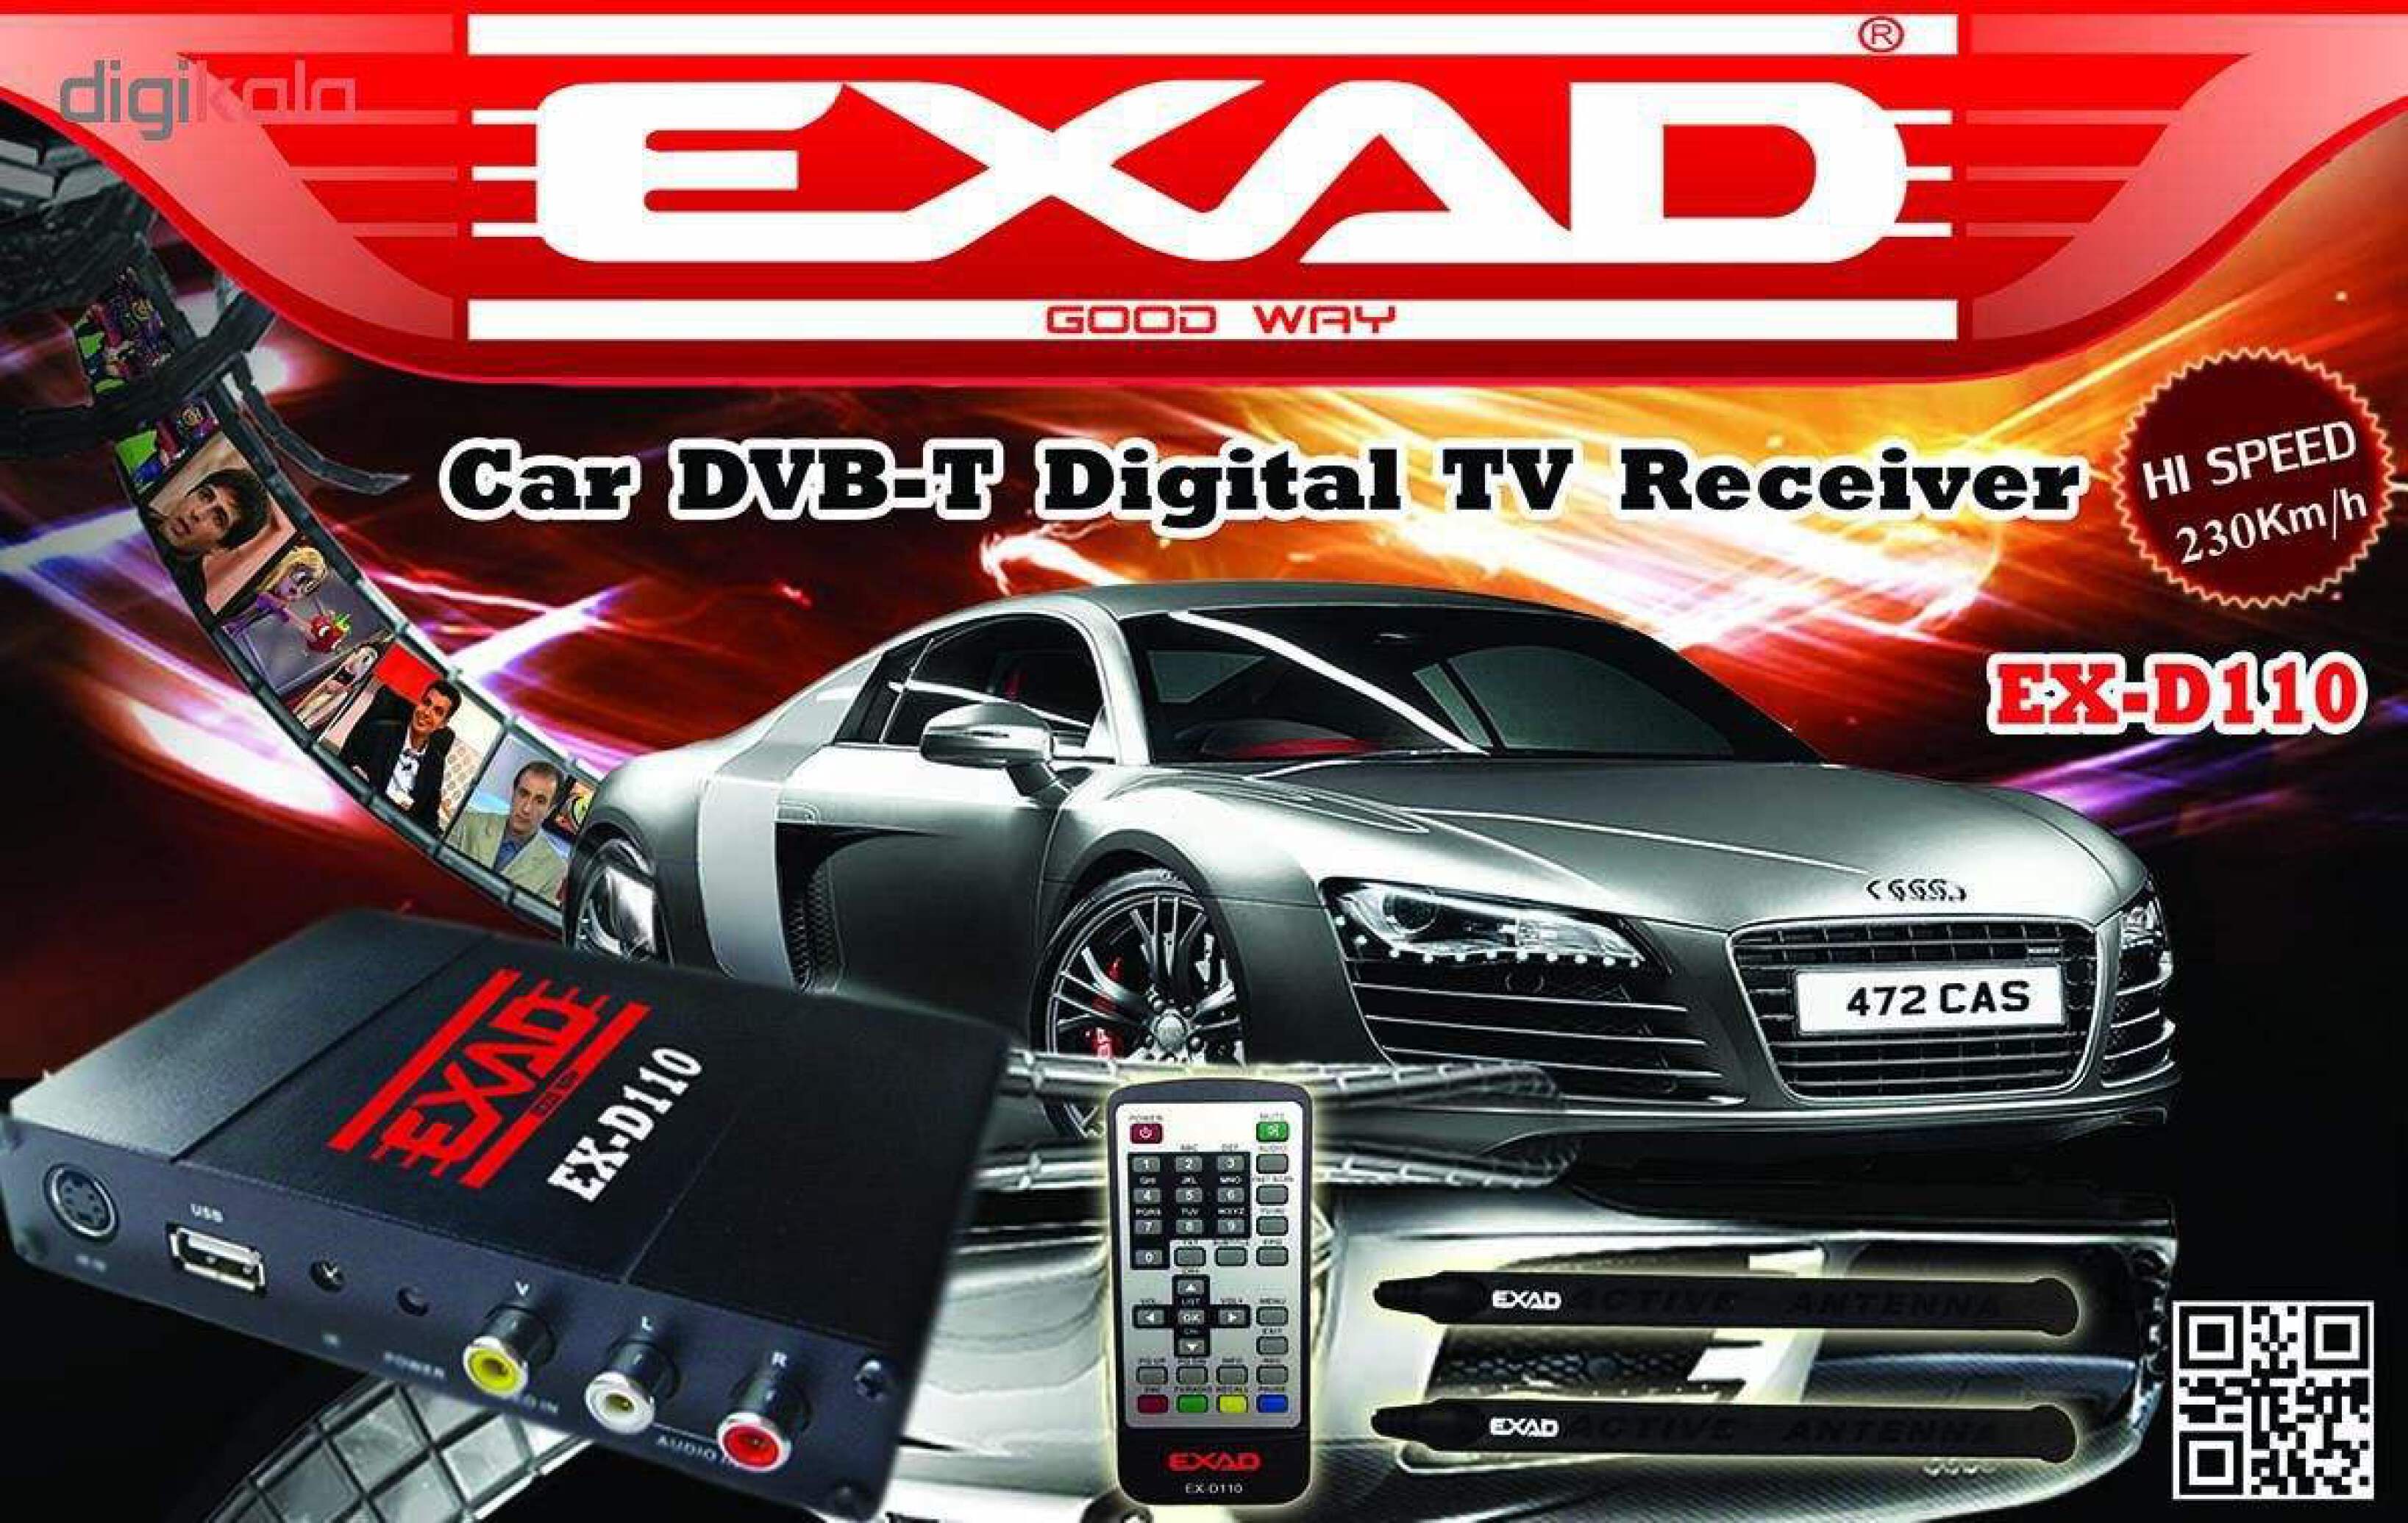  گیرنده دیجیتال خودرو اگزد مدل EXAD D-110 